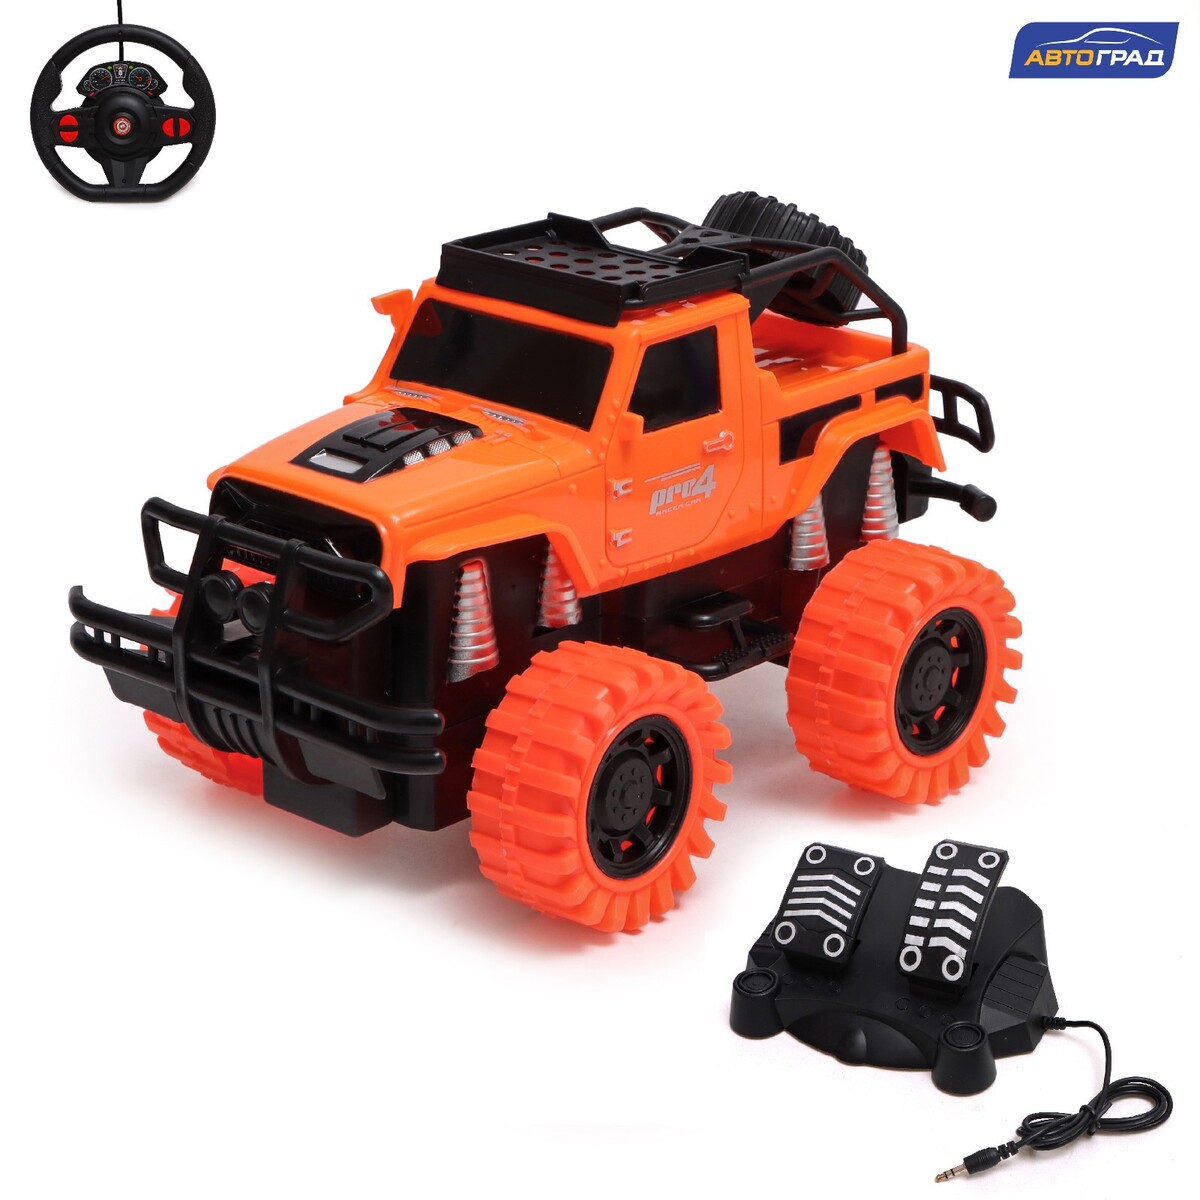 Джип радиоуправляемый truck, педали и руль, работает от аккумулятора, цвет оранжевый ролик массажный высокая жесткость 33x13 5 cм star fit pro fa 509 оранжевый